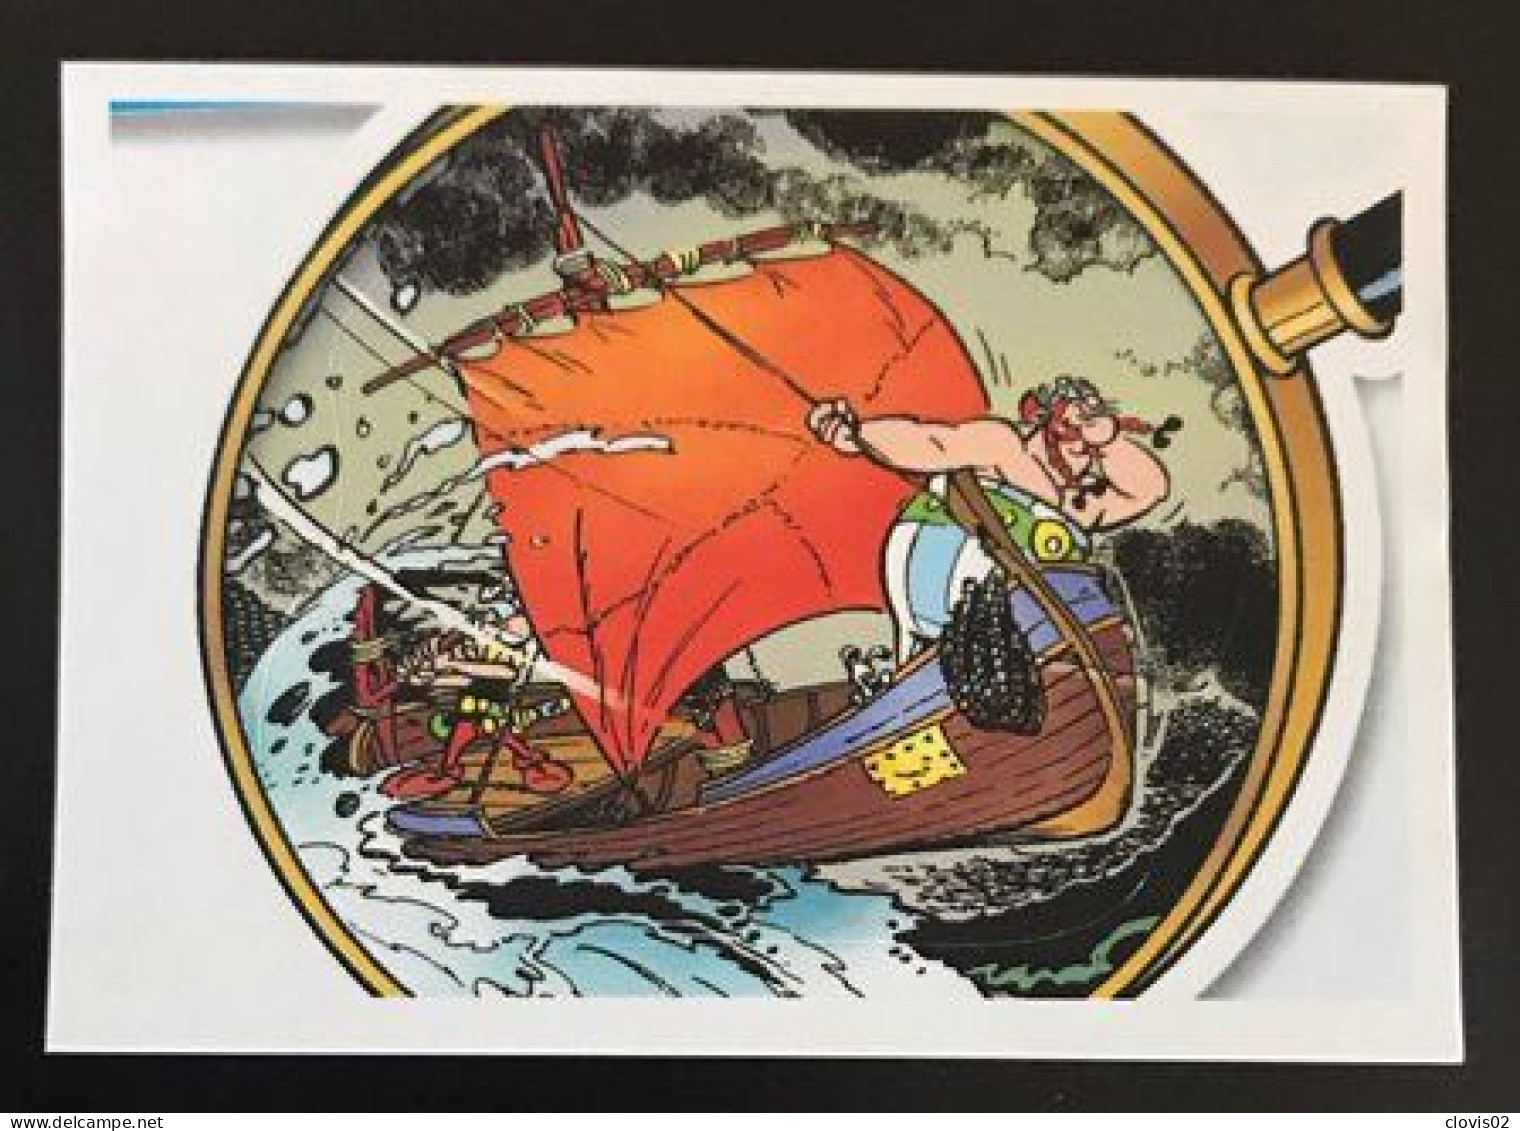 101 - PANINI Family Astérix 60 Ans D'aventures - Carrefour Sticker Vignette - Franse Uitgave